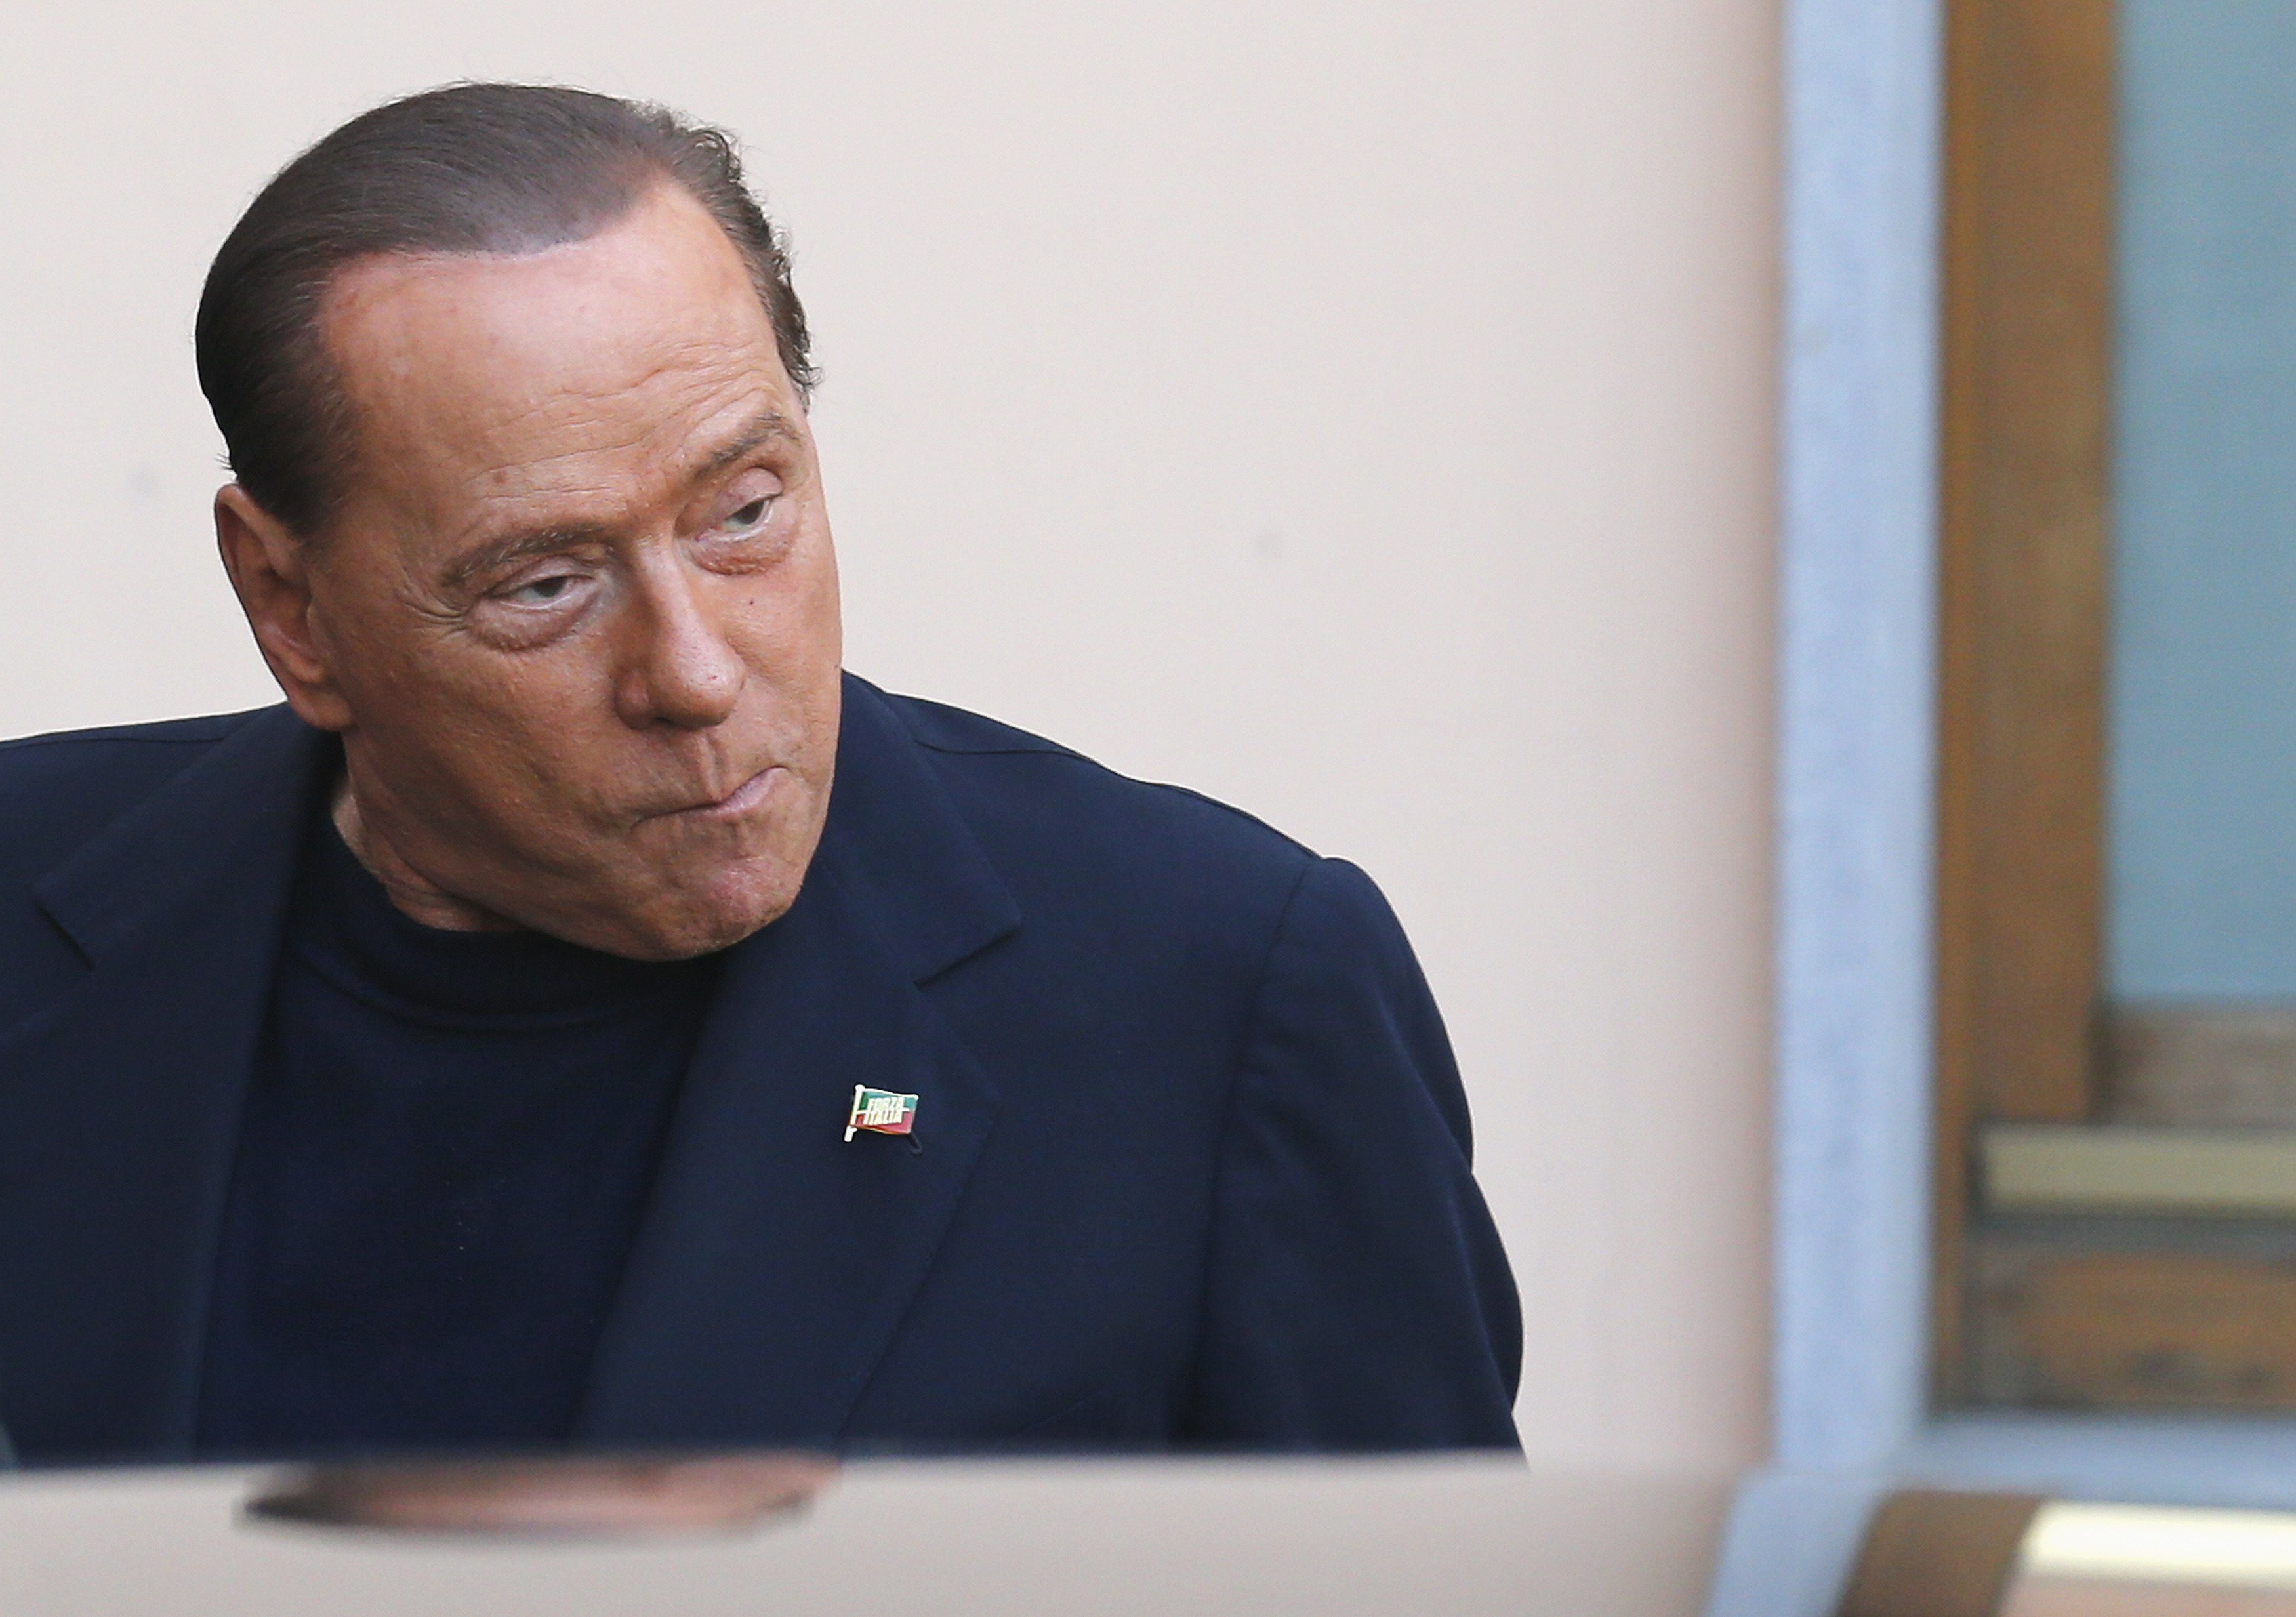 Justicia italiana confirma absolución de Berlusconi en caso “Ruby”